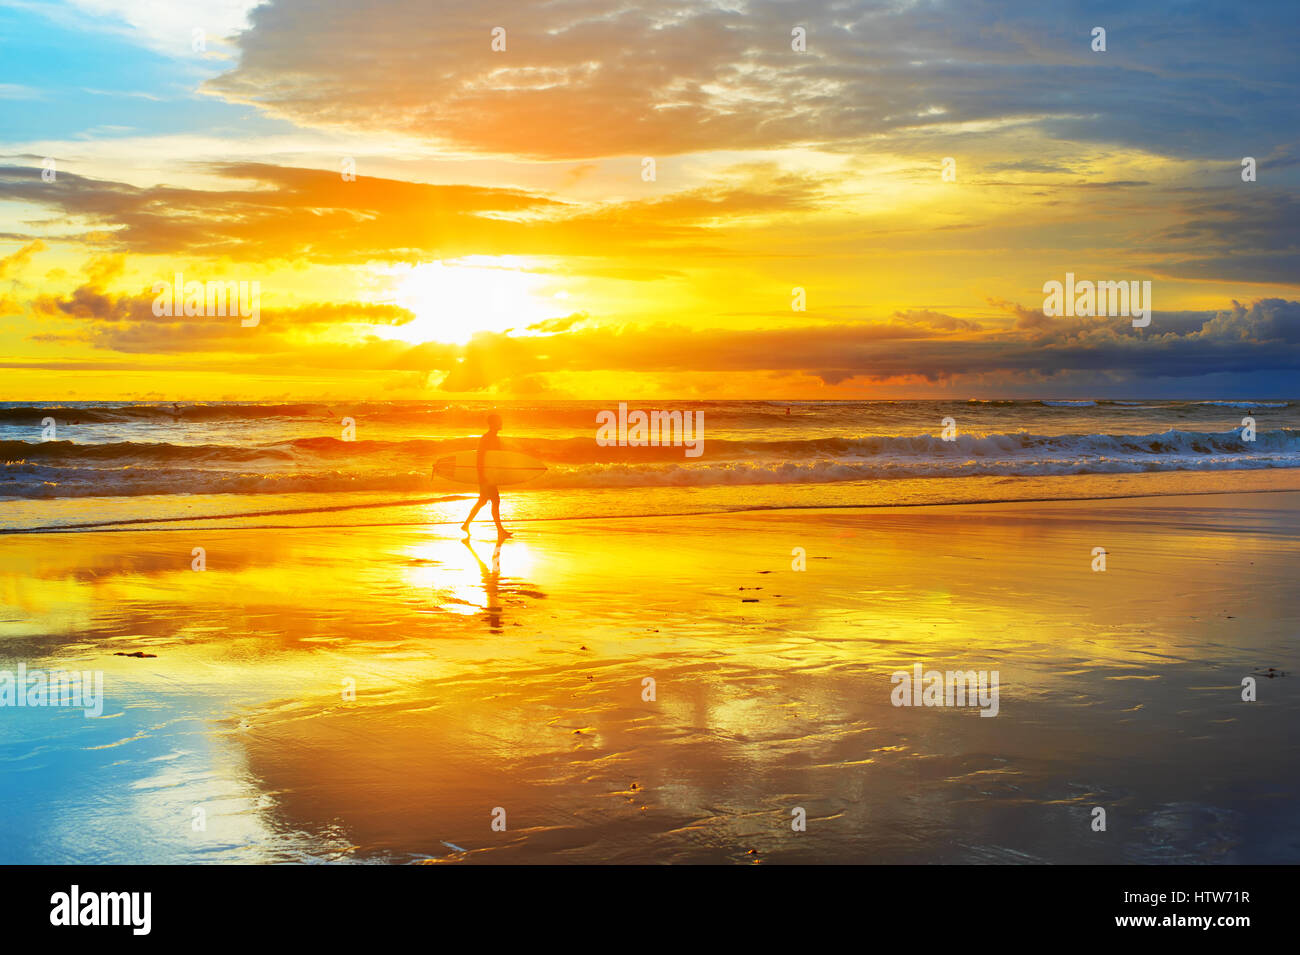 Surfer mit Surfbrett am Strand bei Sonnenuntergang zu Fuß. Insel Bali, Indonesien Stockfoto